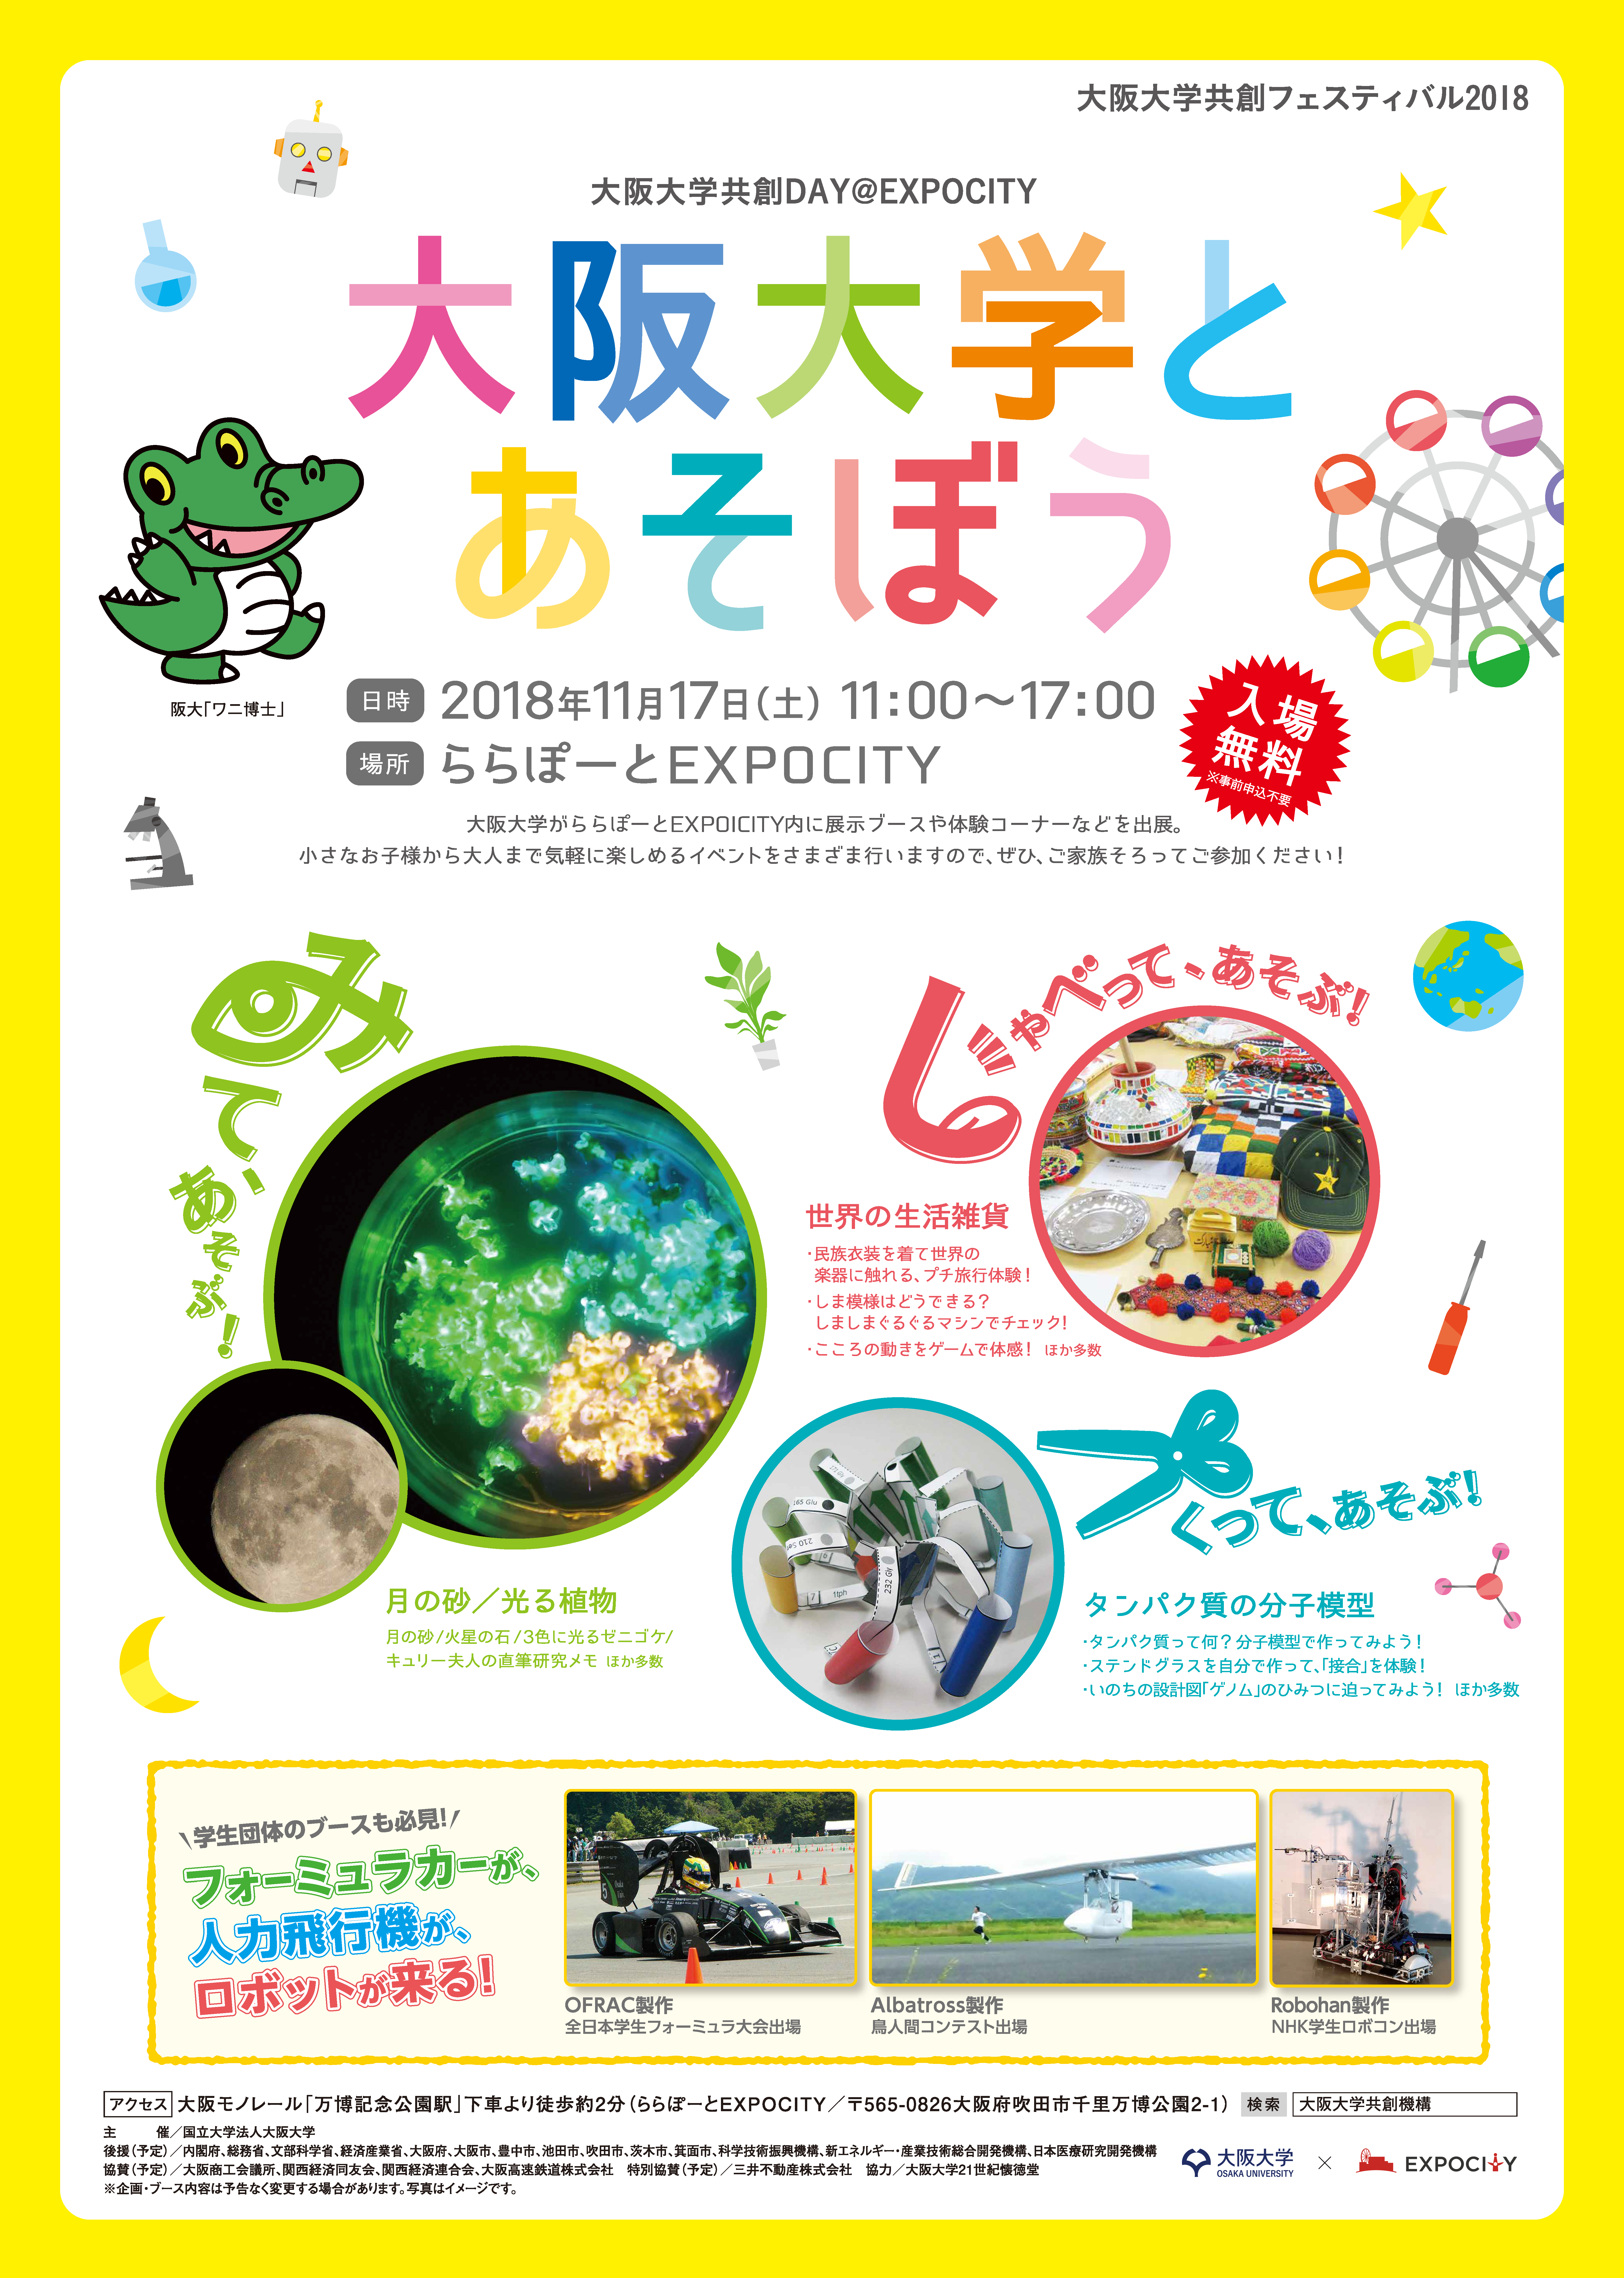 Co-Creation Bureau, Osaka University "Enjoy with Osaka Univ." leaflet